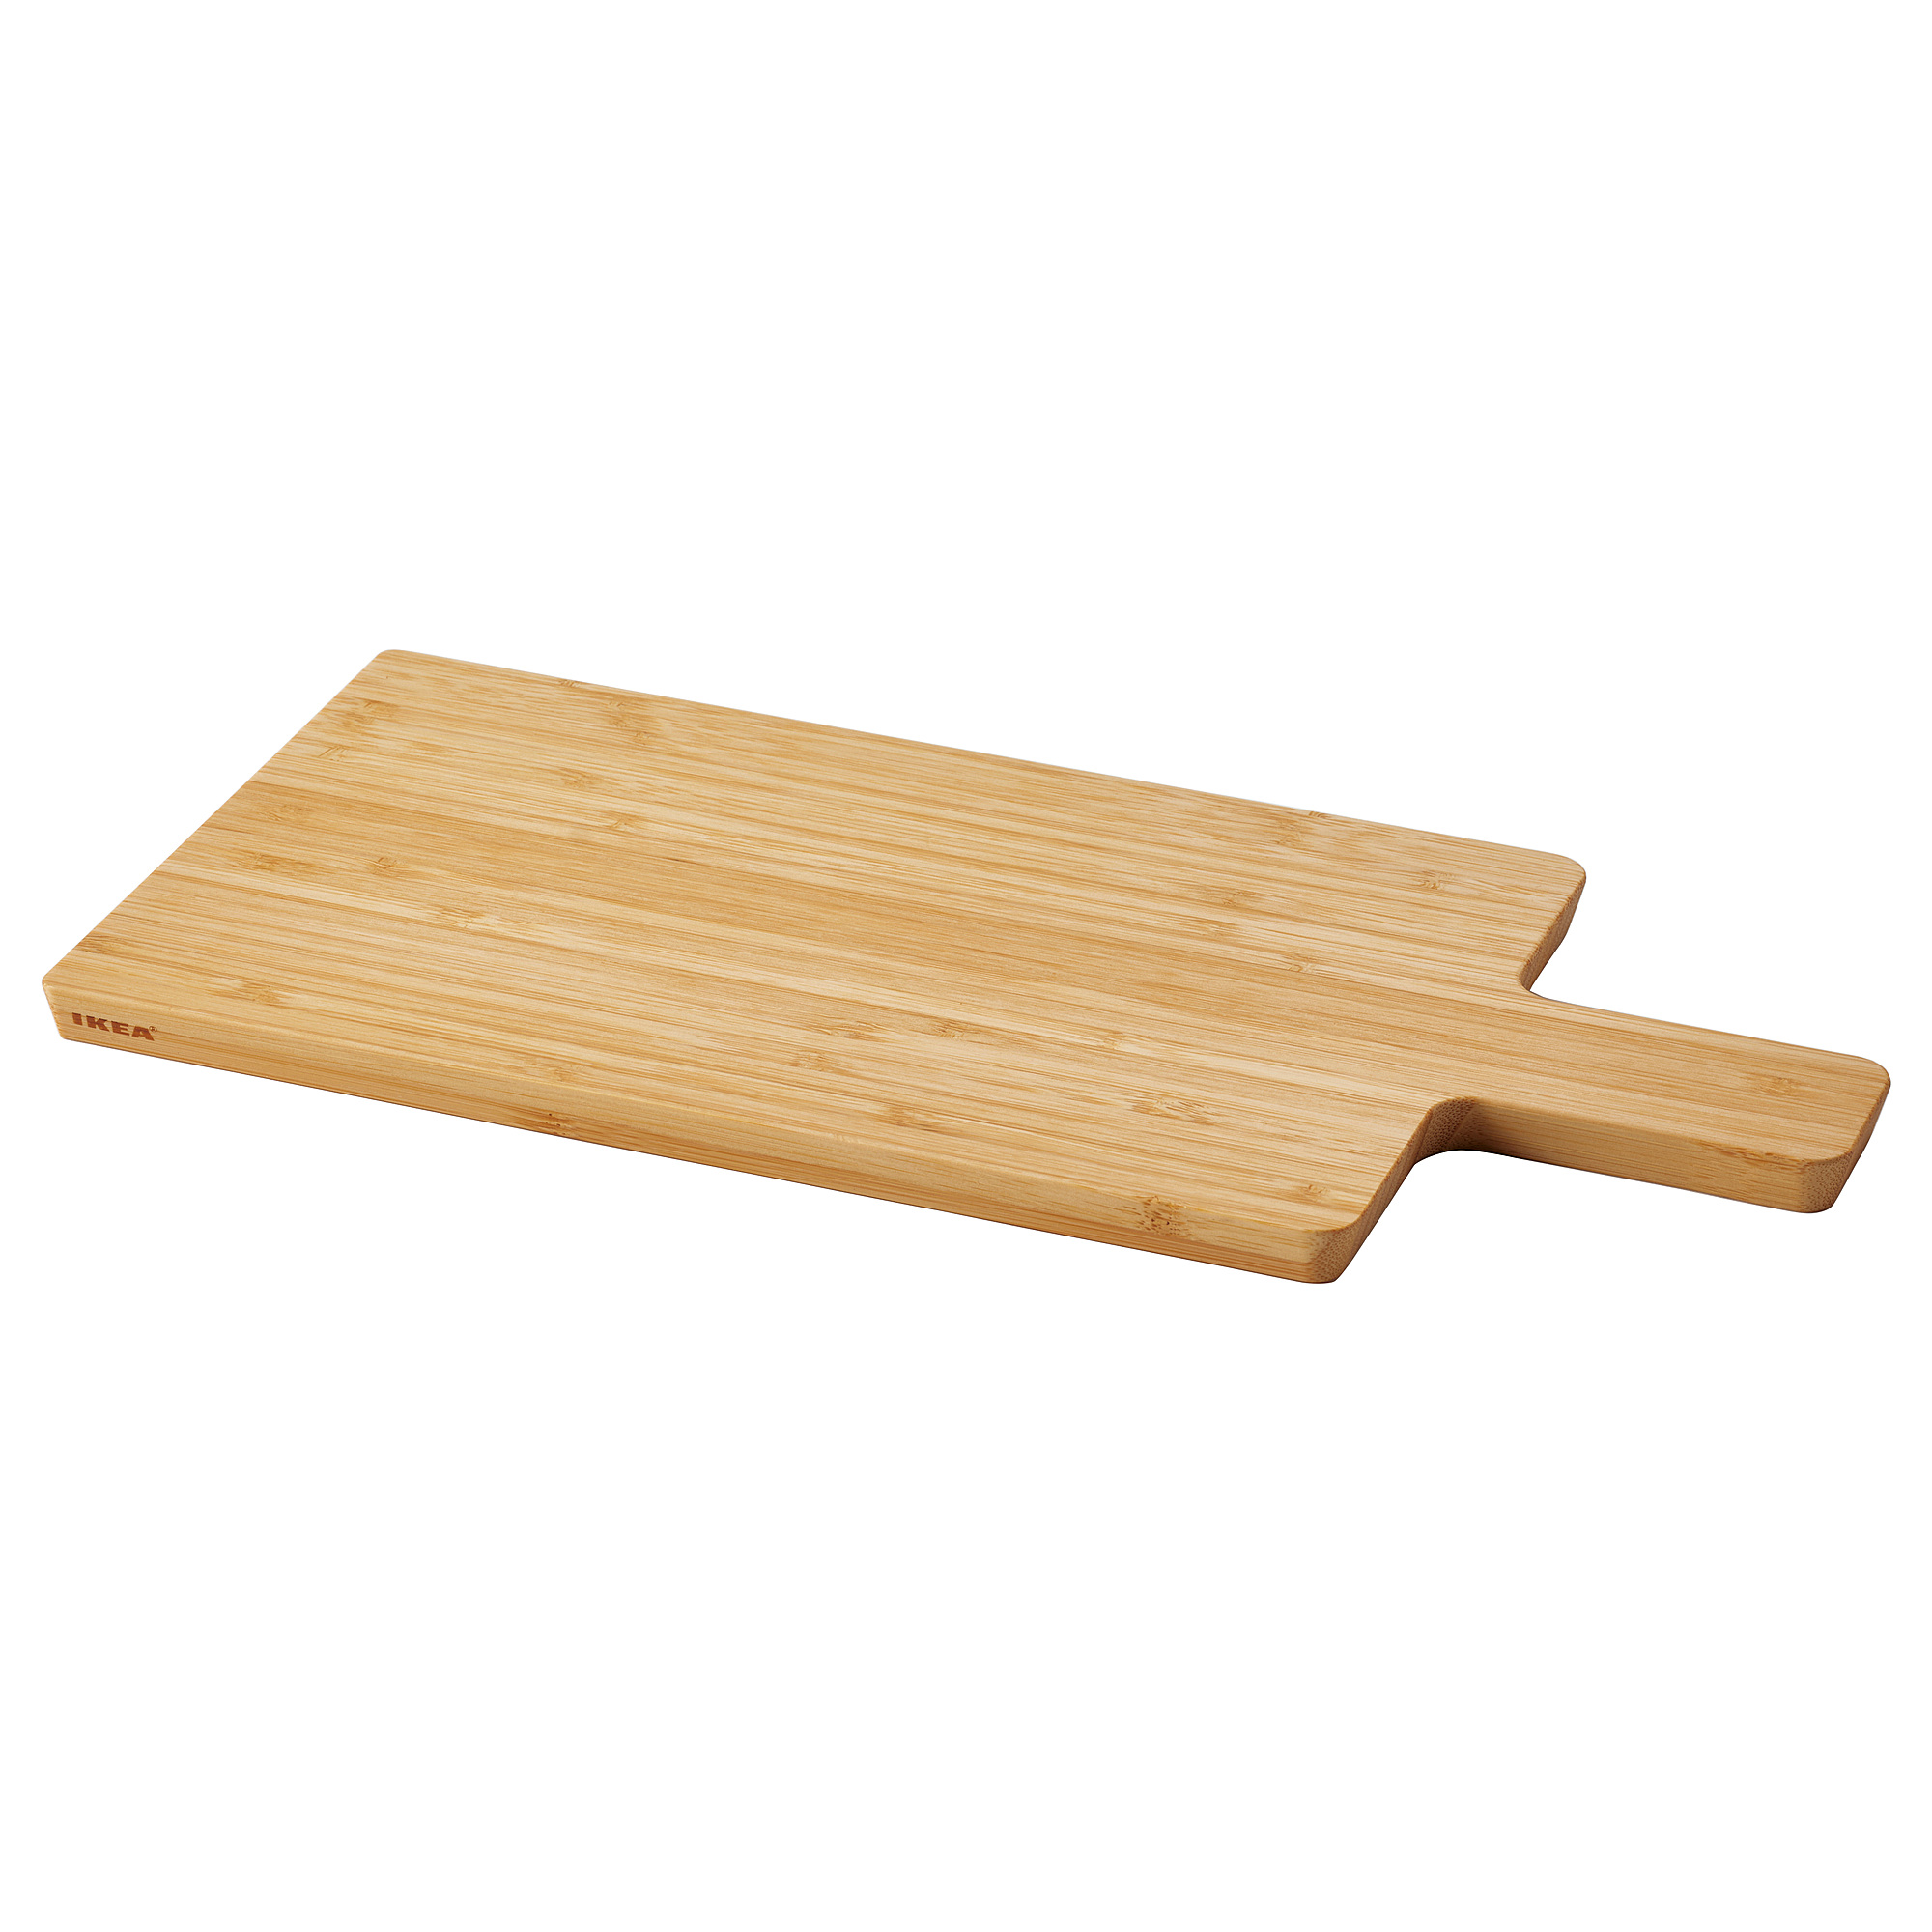 APTITLIG chopping board